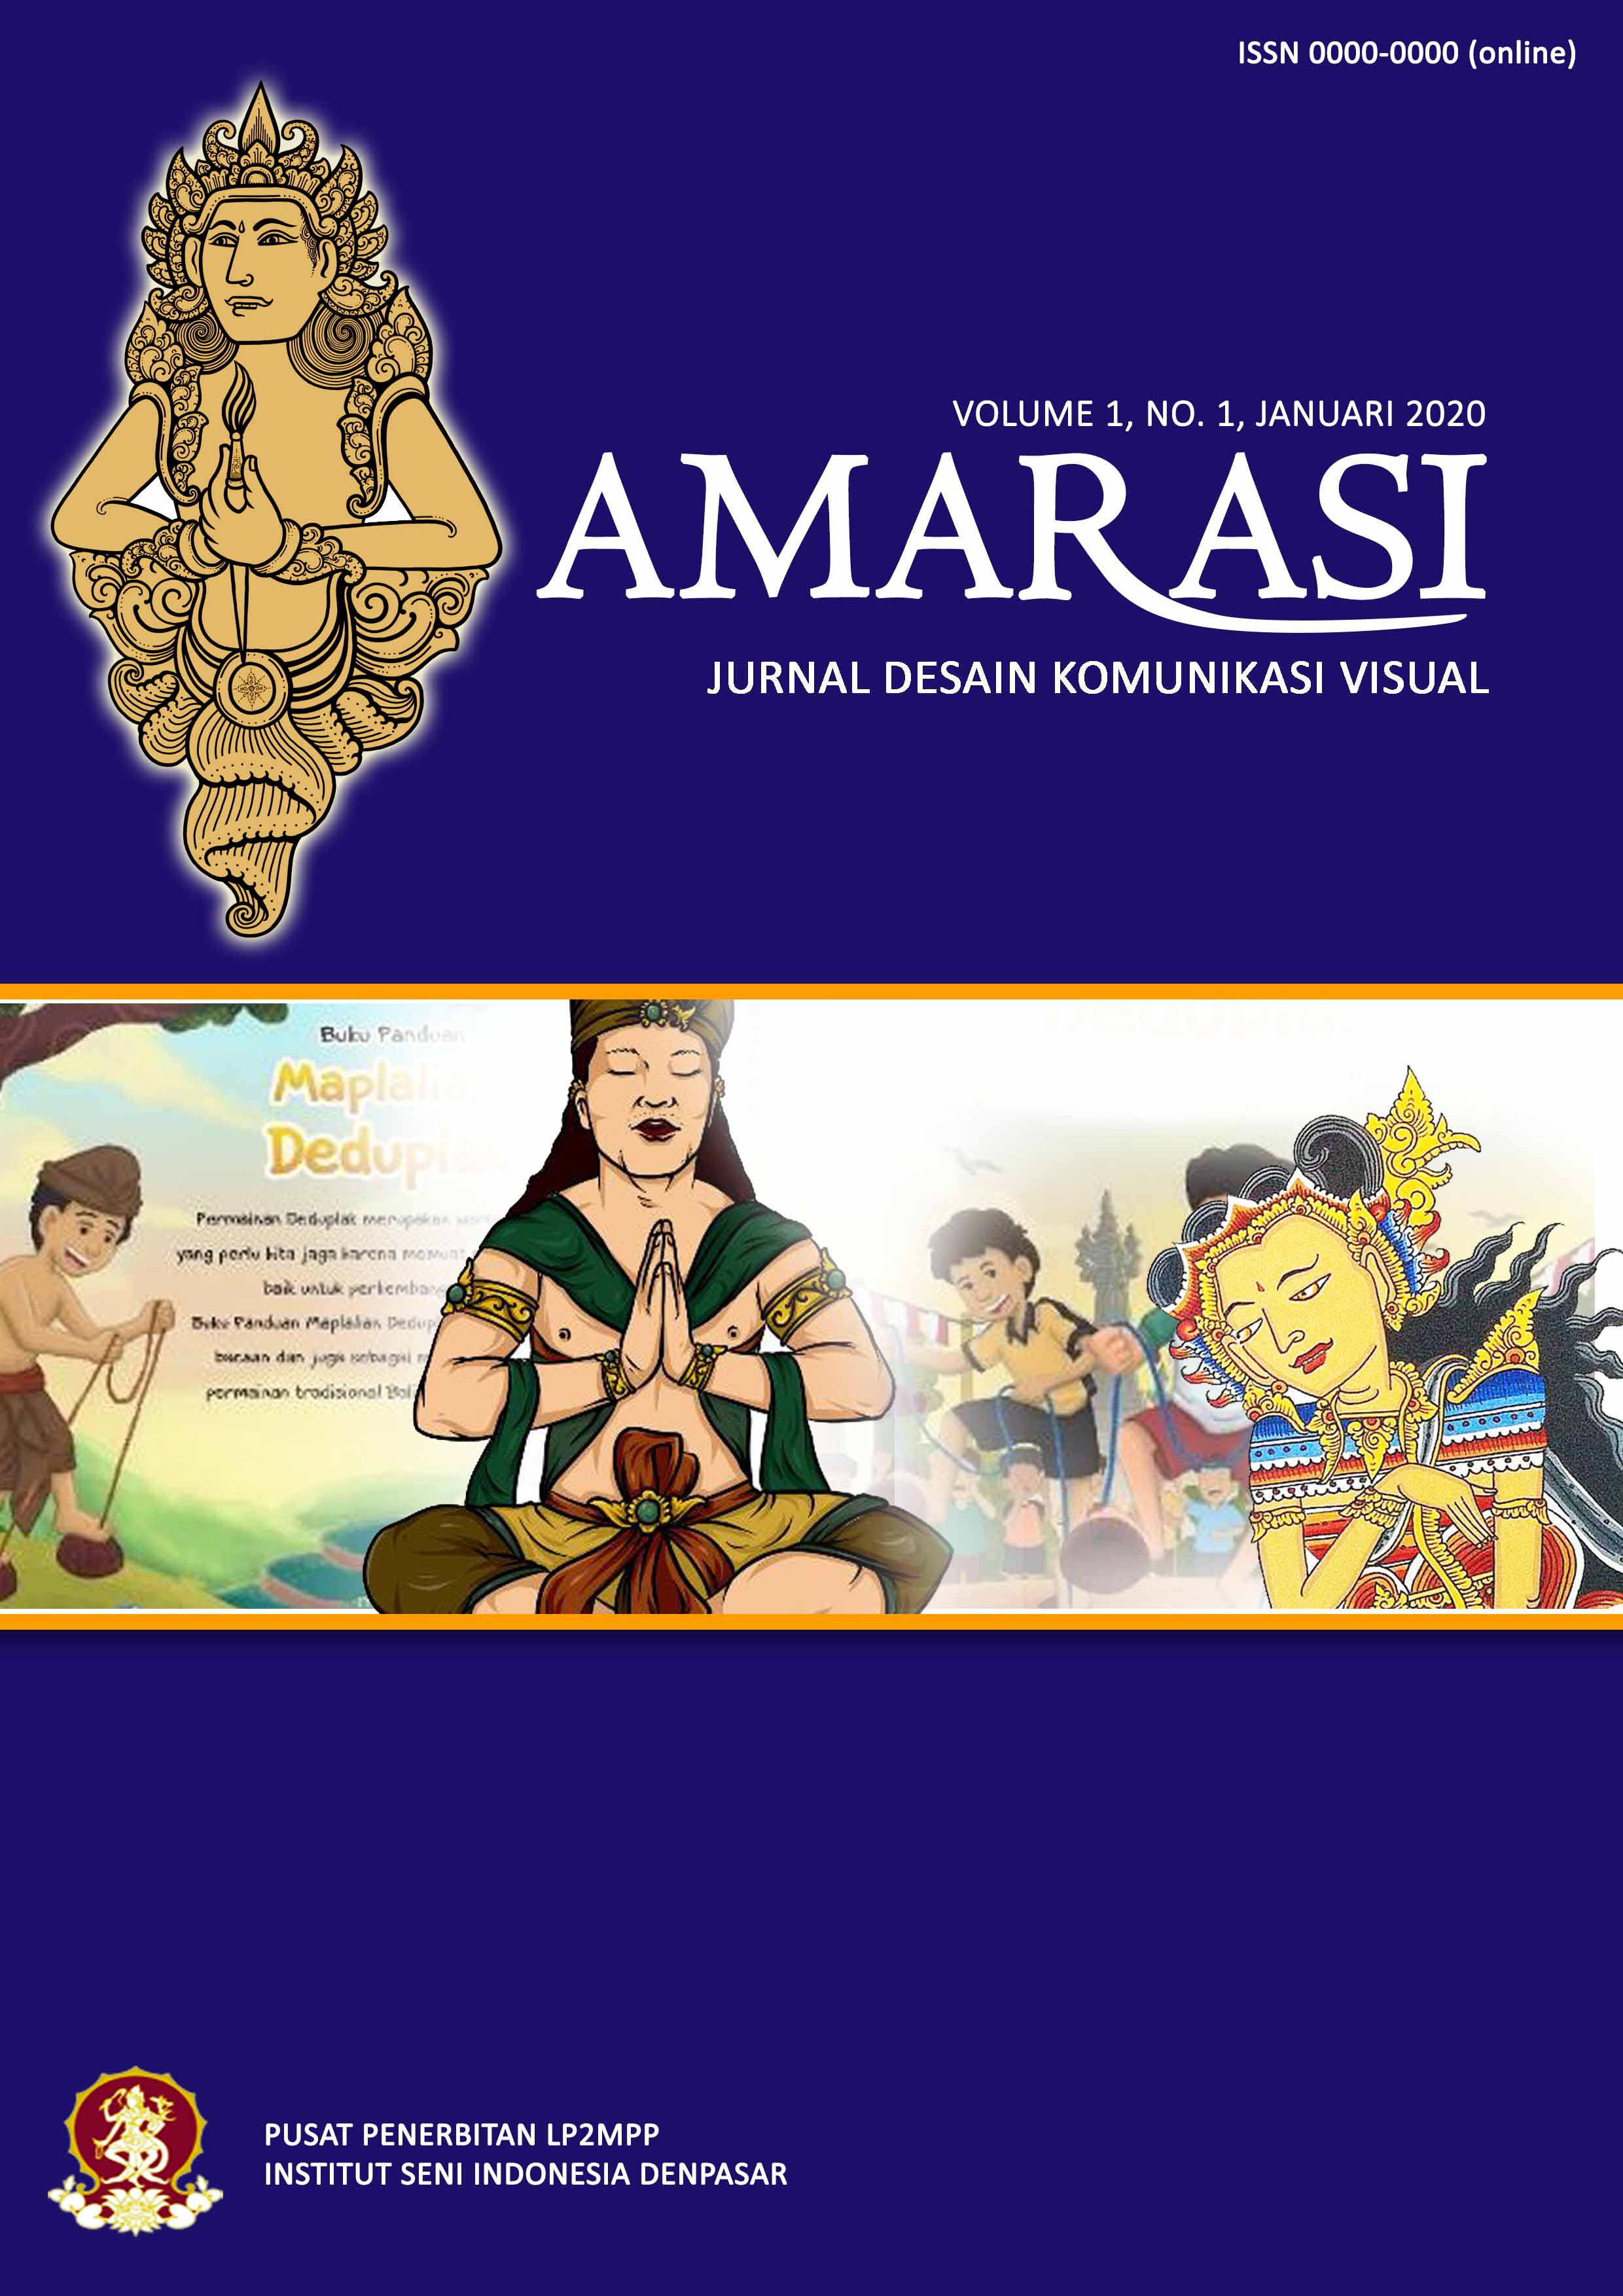 Jurnal Amarasi - Desain Komunikasi Visual - ISI Denpasar